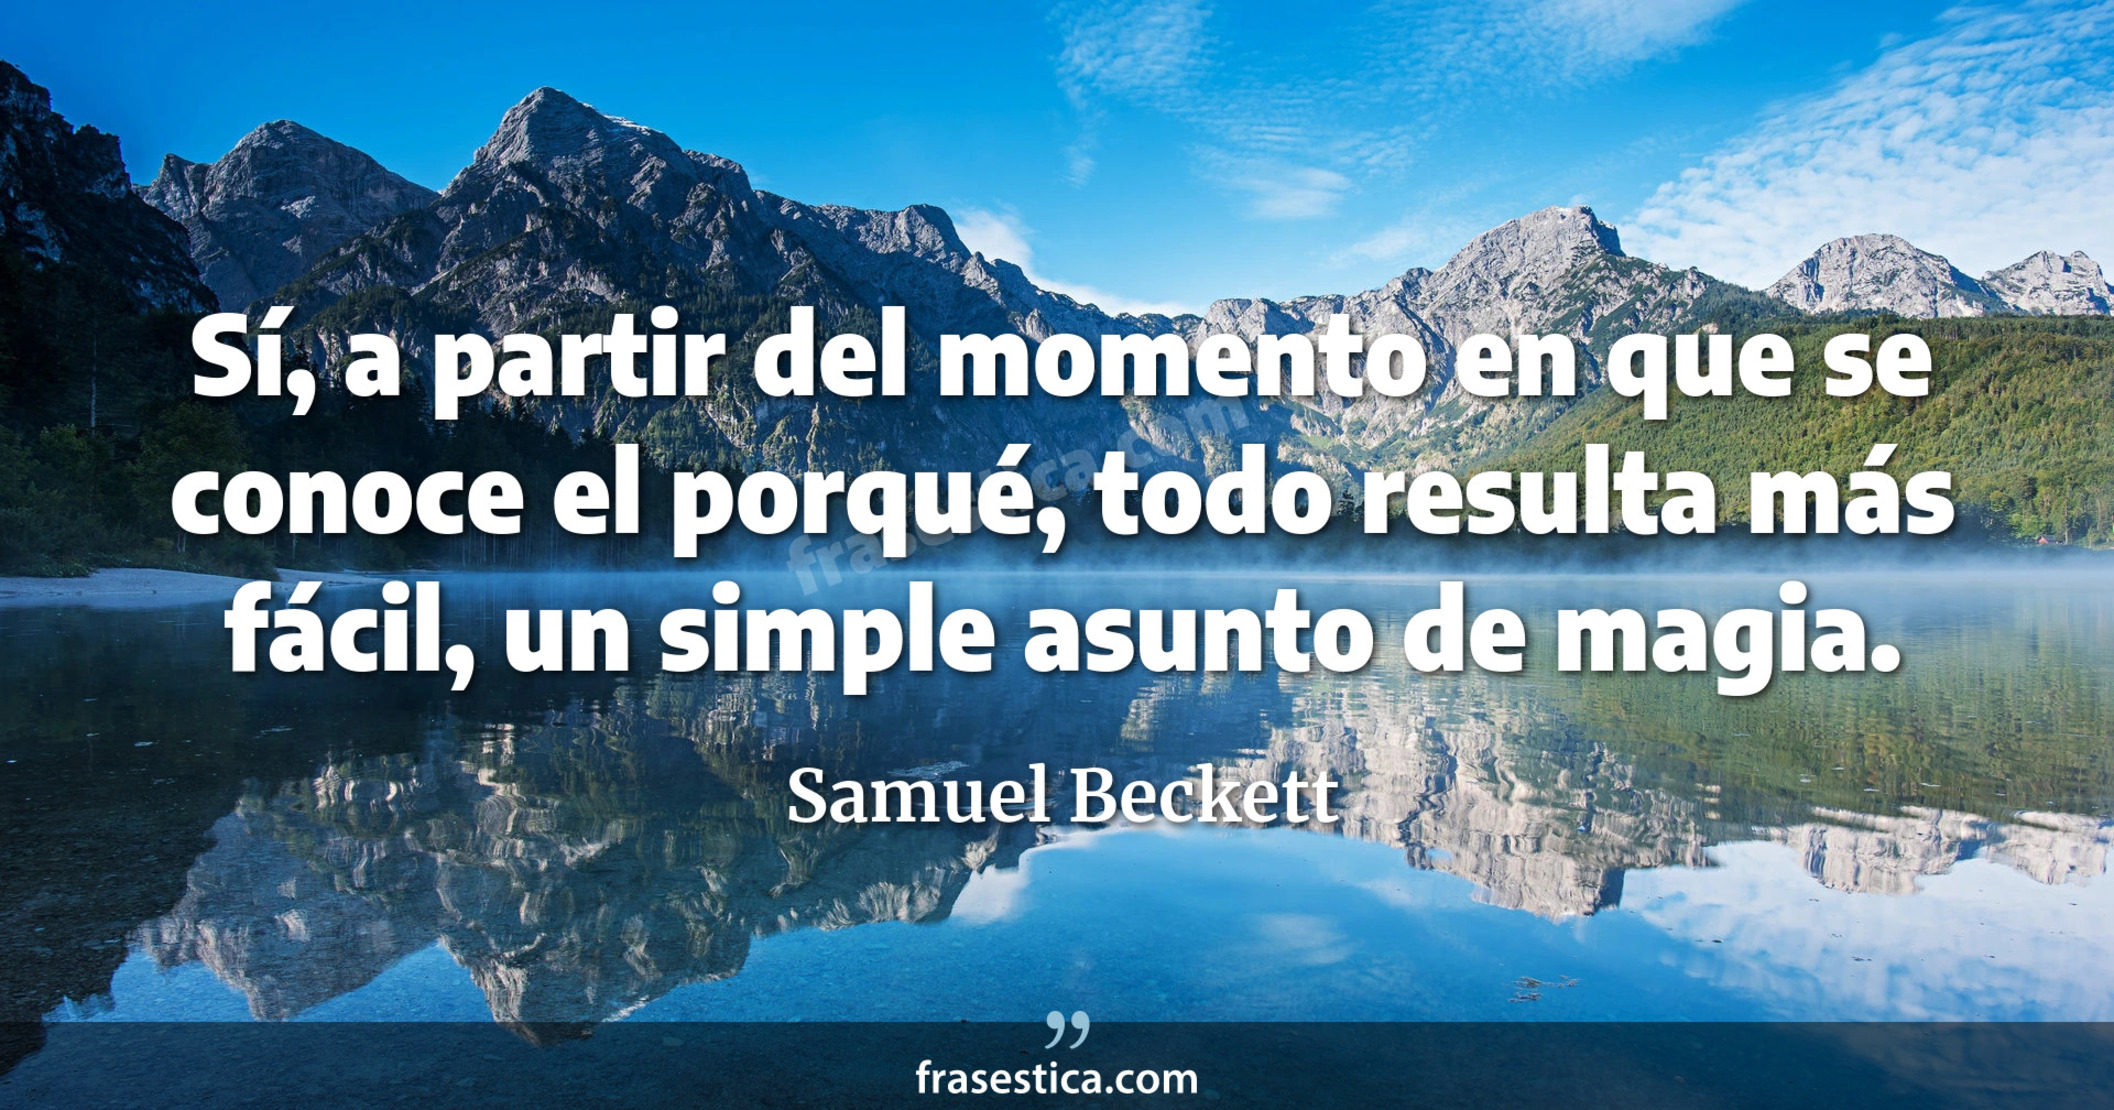 Sí, a partir del momento en que se conoce el porqué, todo resulta más fácil, un simple asunto de magia. - Samuel Beckett